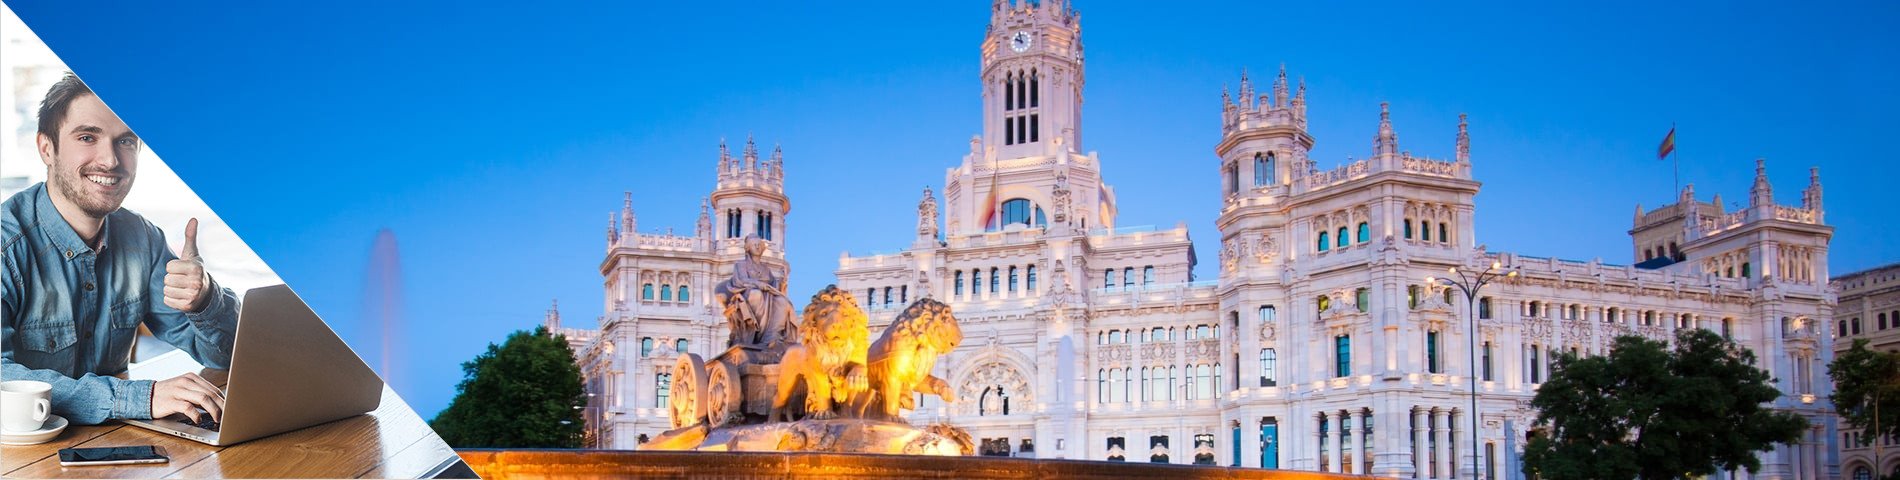 Madrid - Španělština a Pracovní umístění